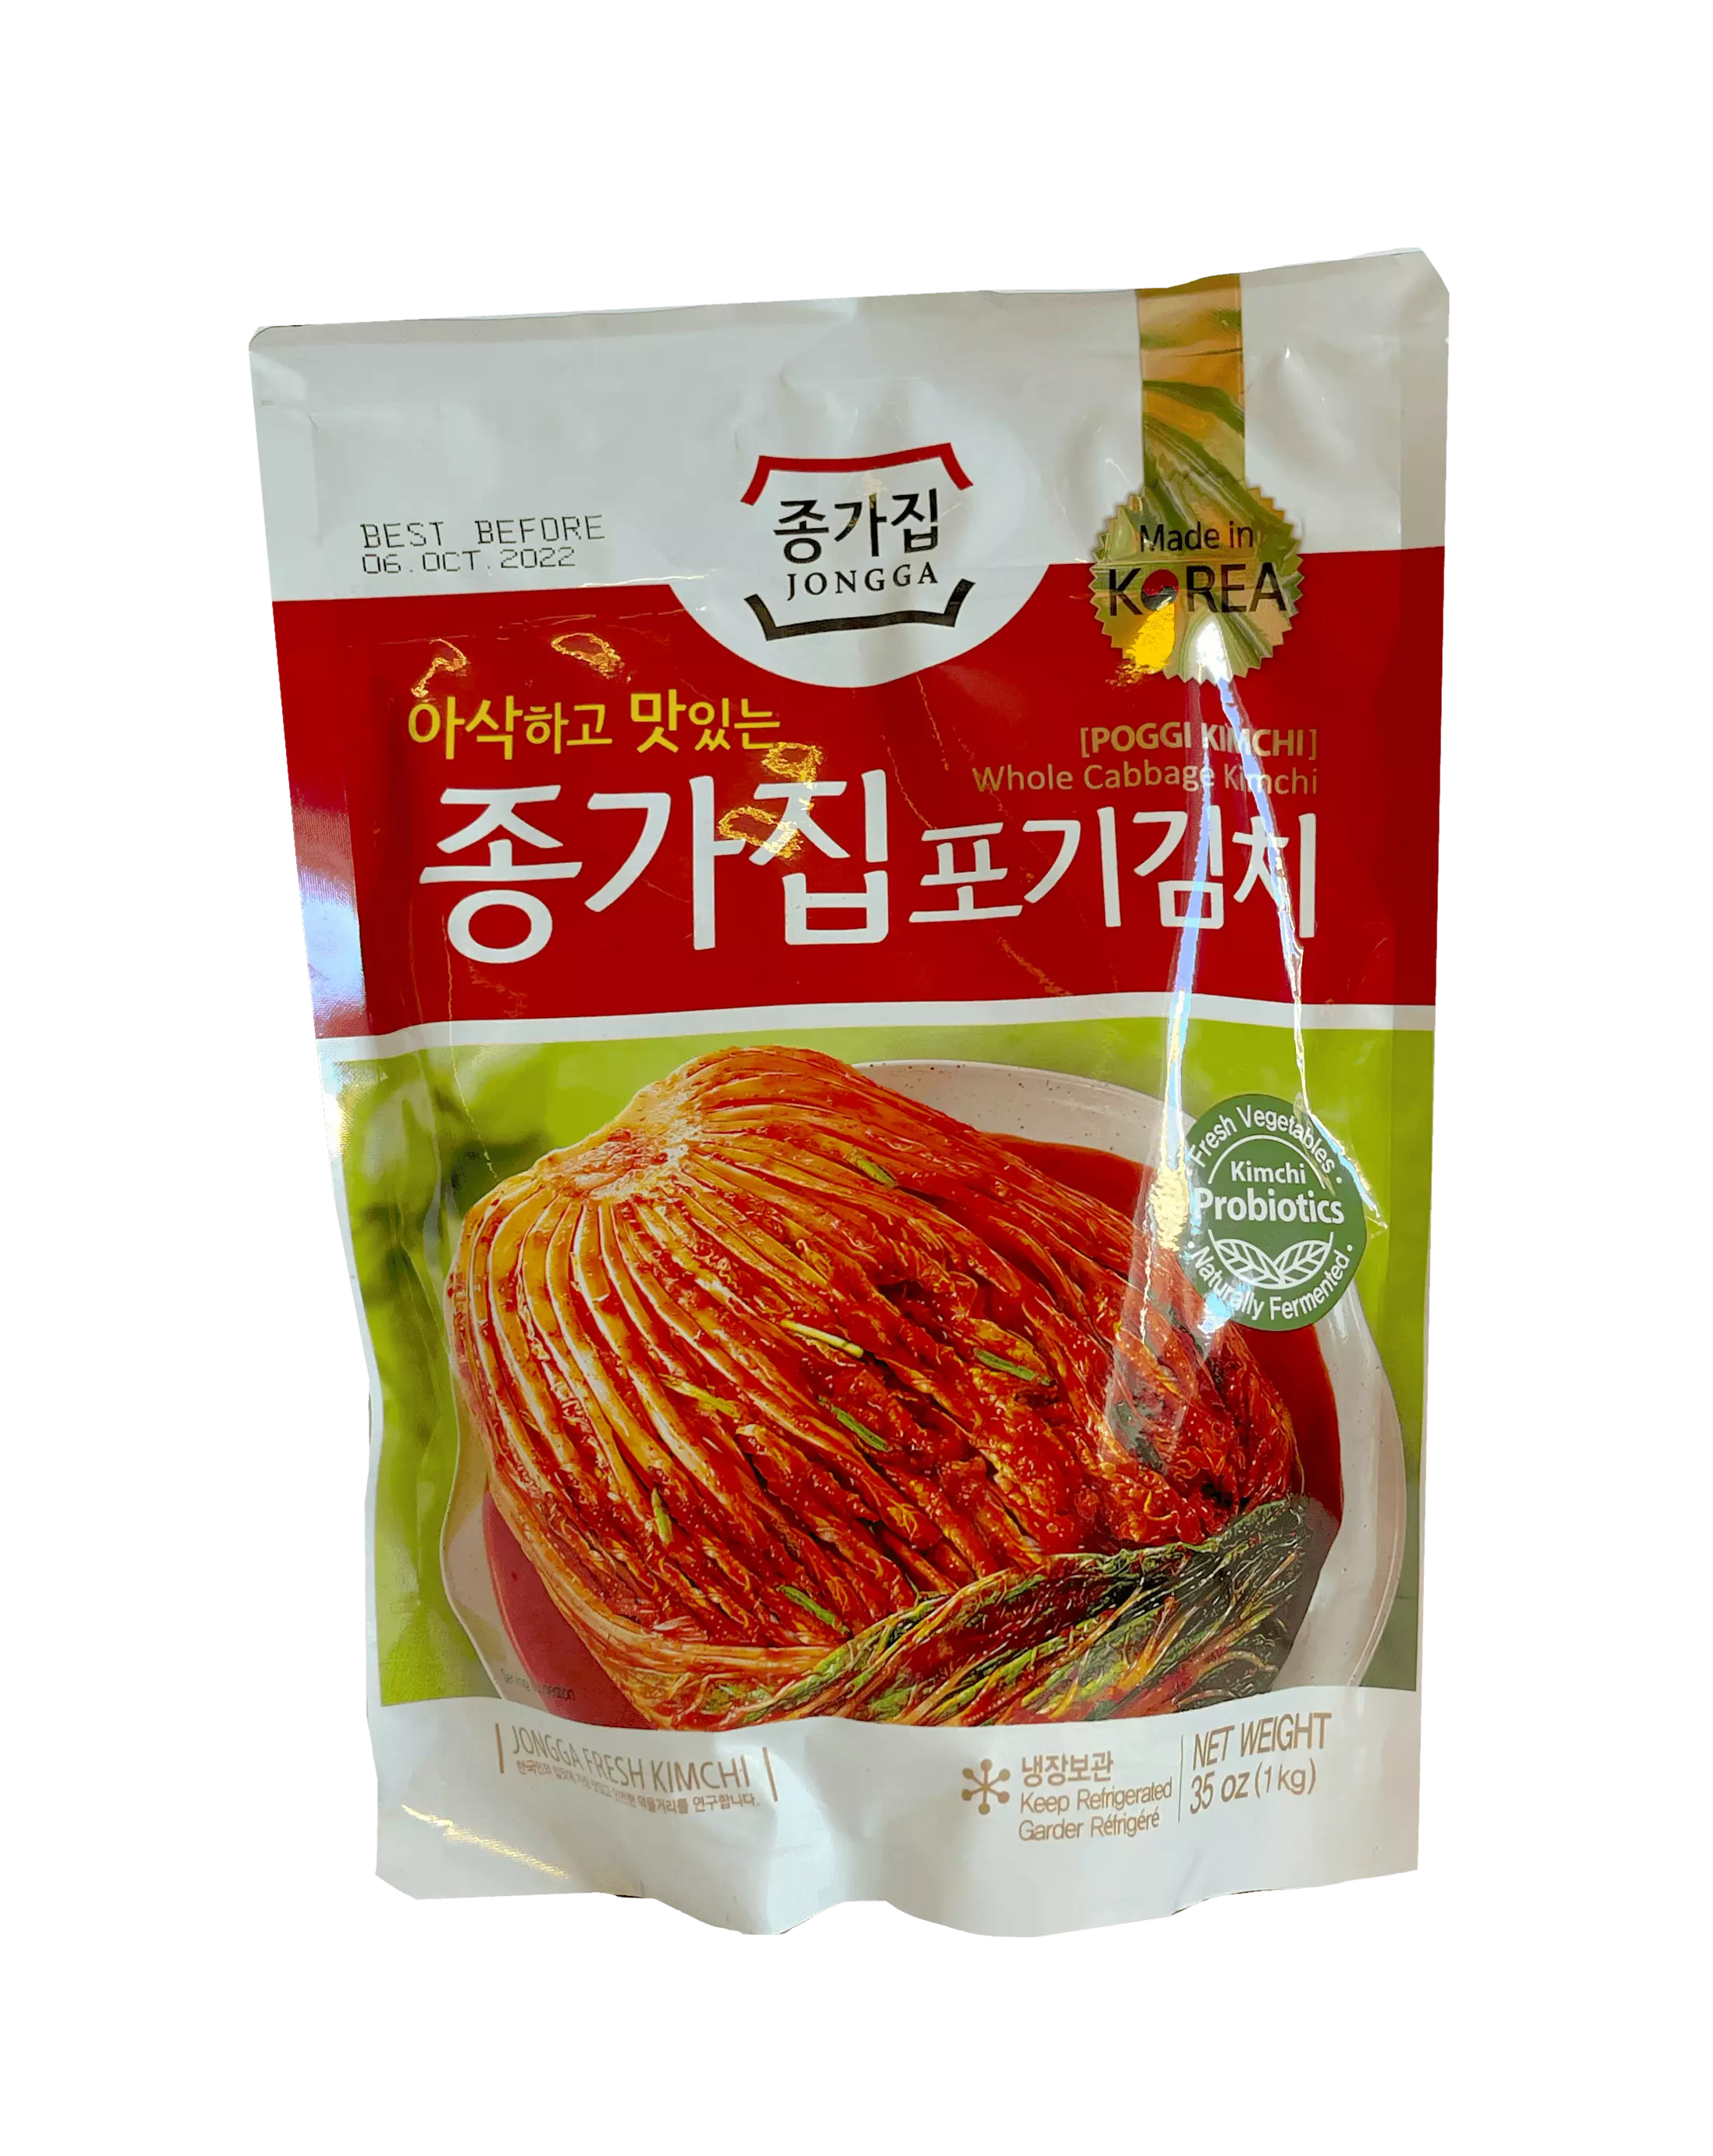 Kimchi 1000g Chongga Korea